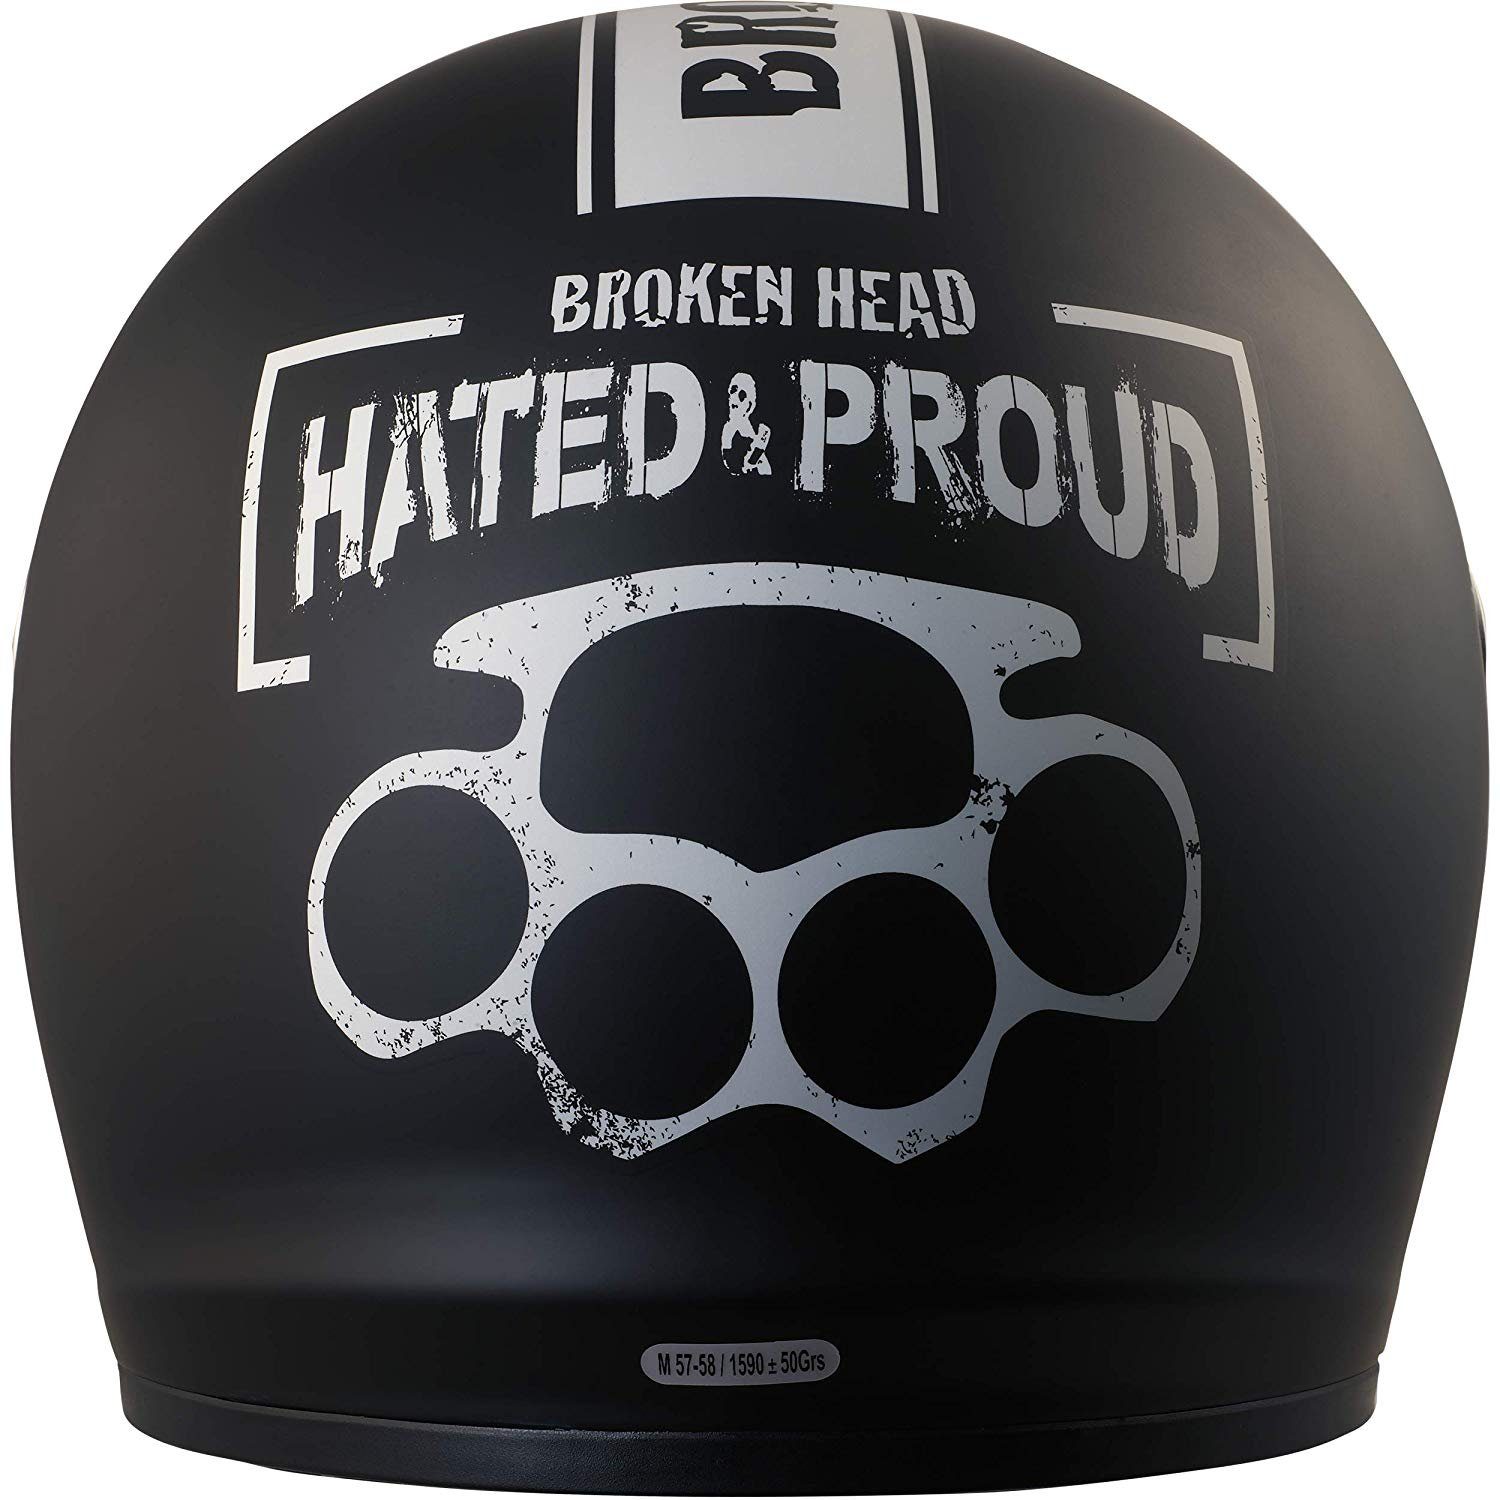 inkl. (mit schwarzem Hated Visier und schwarzem Proud & schwarzem klarem Motorradhelm inklusiv Visier), Head Broken Visier